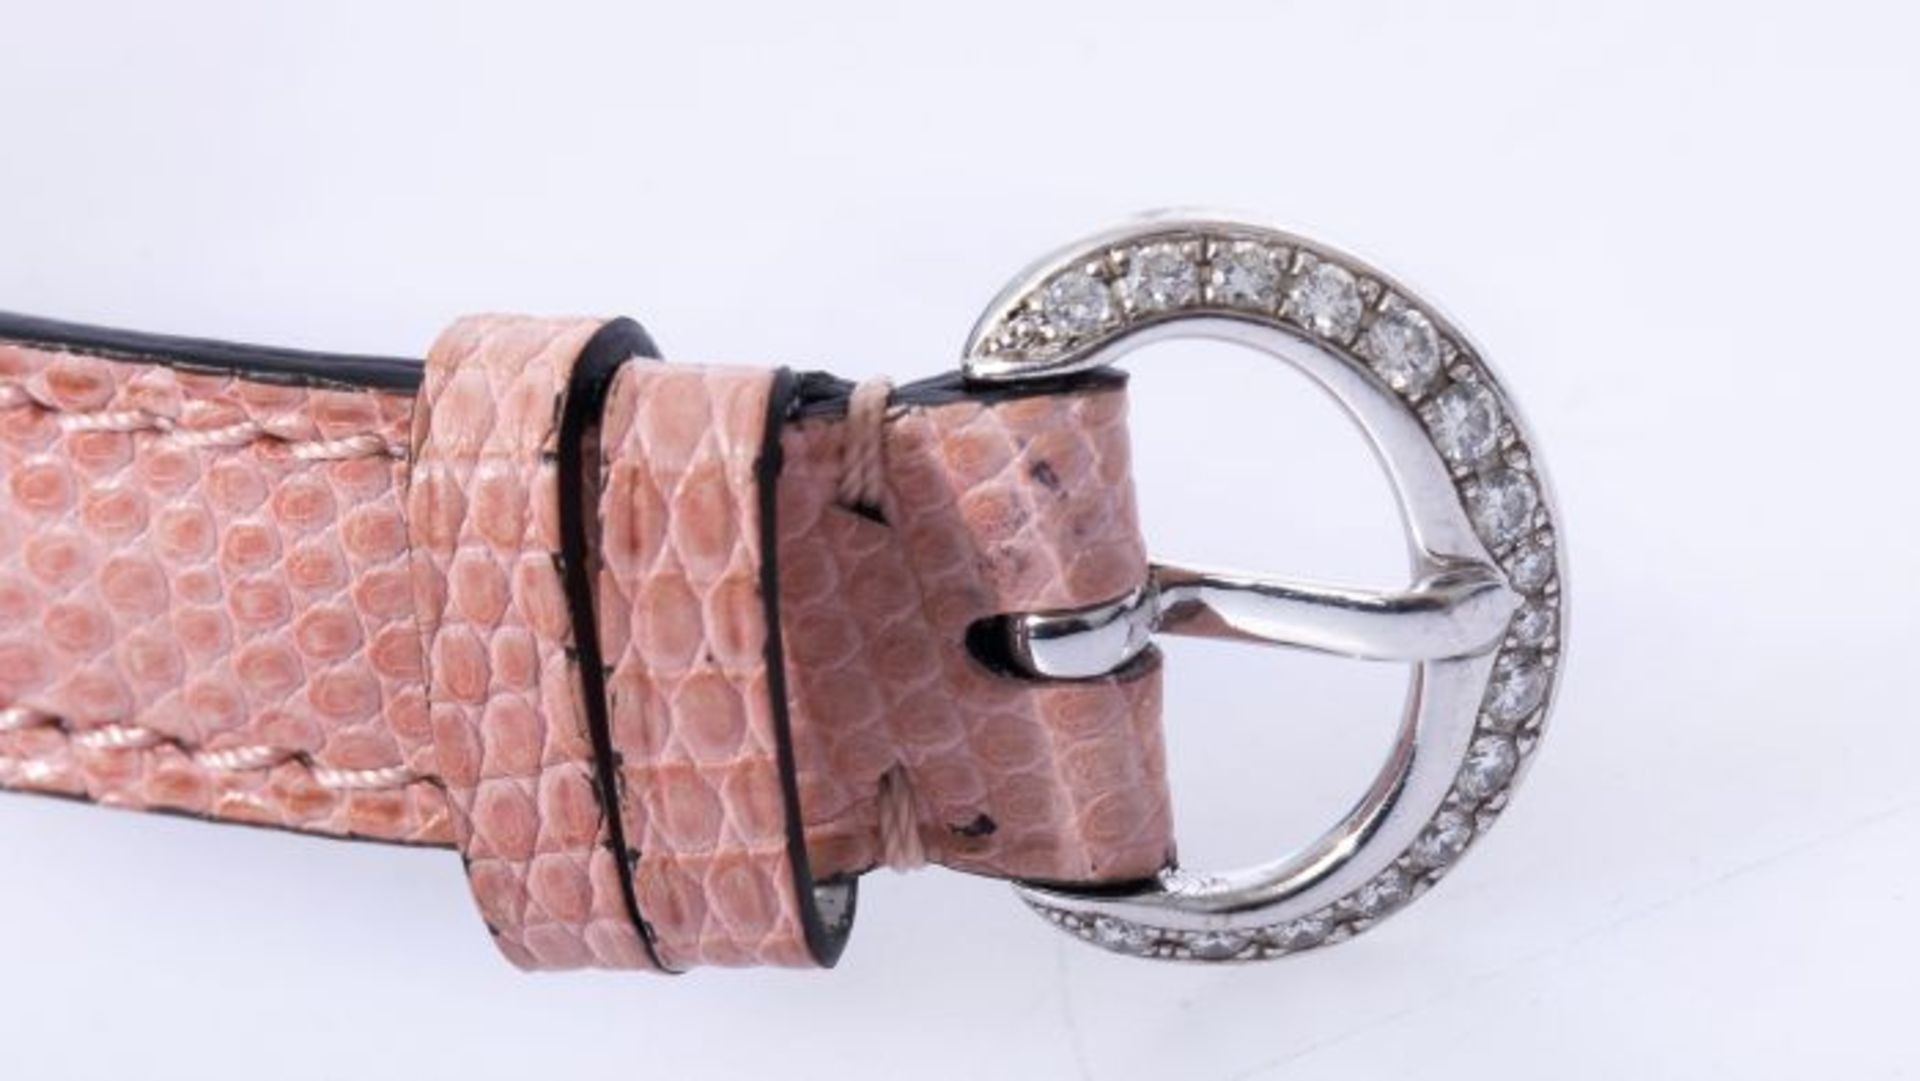 Chopard Happy Diamonds Uhr mit 2,43ct. pinken Brillanten NP 102.780 Euro750 Weiß- und Roségold. - Bild 6 aus 7